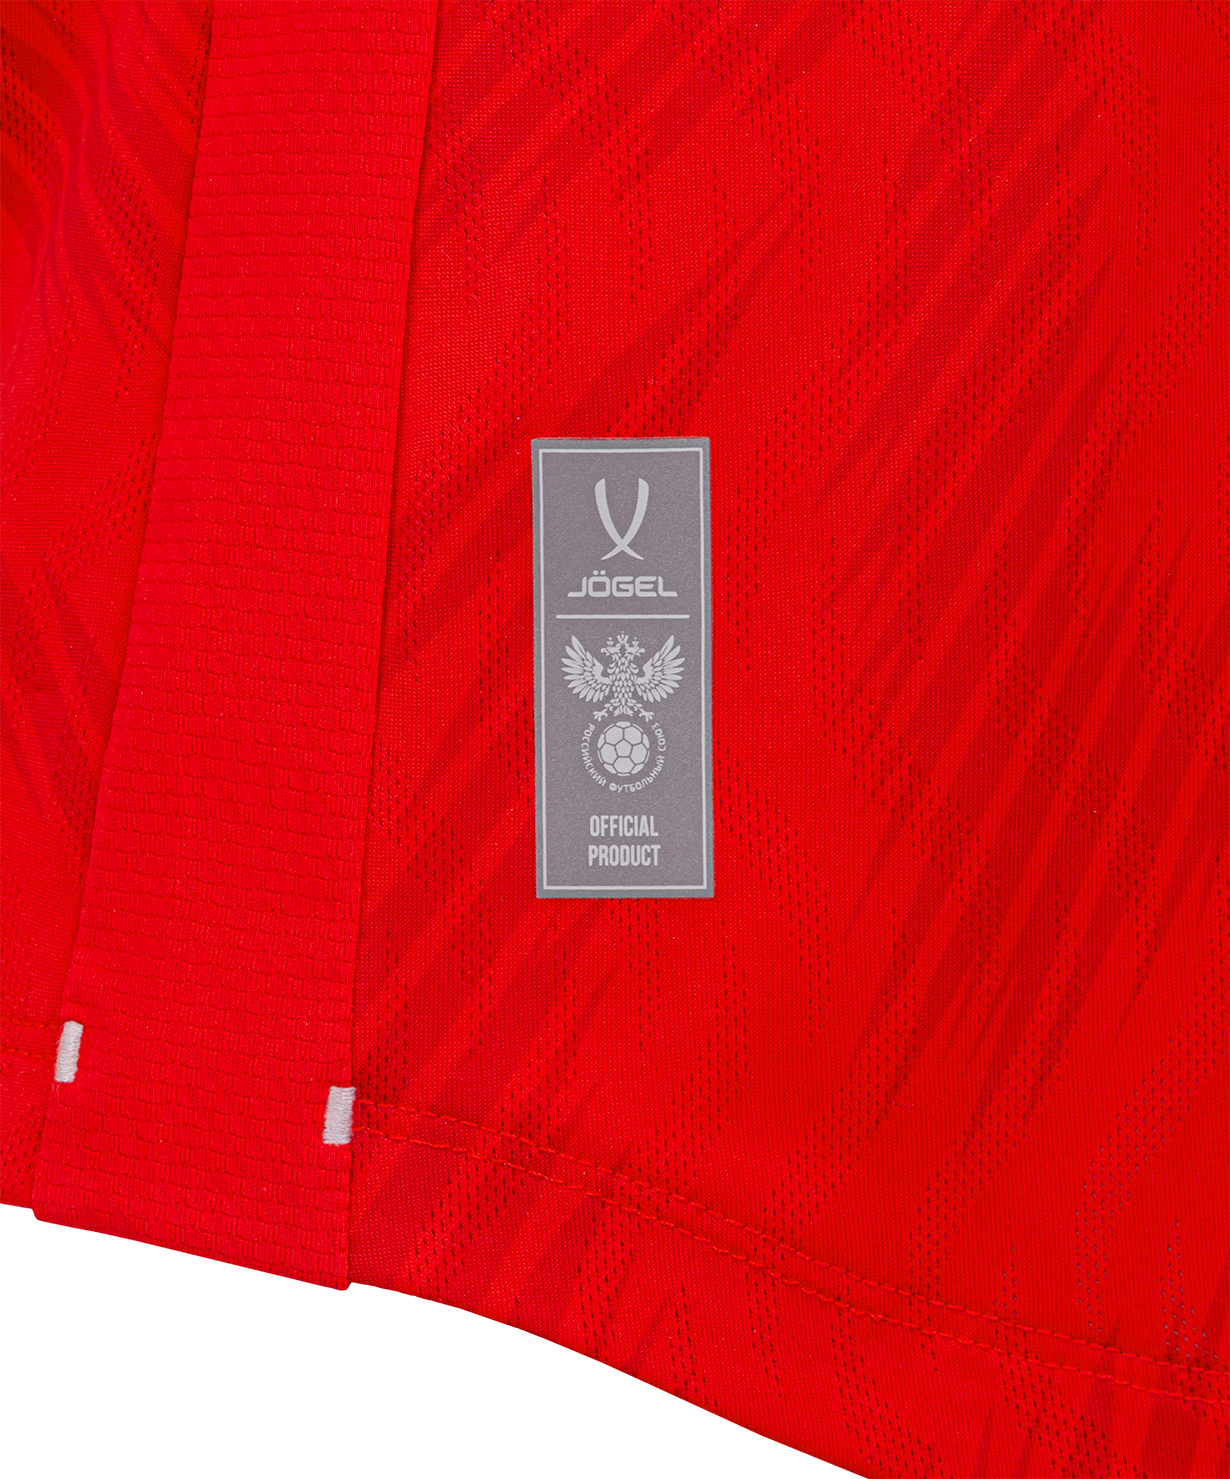 Фото Футболка игровая женская NATIONAL PerFormDRY Home Jersey W, красный со склада магазина СпортСЕ